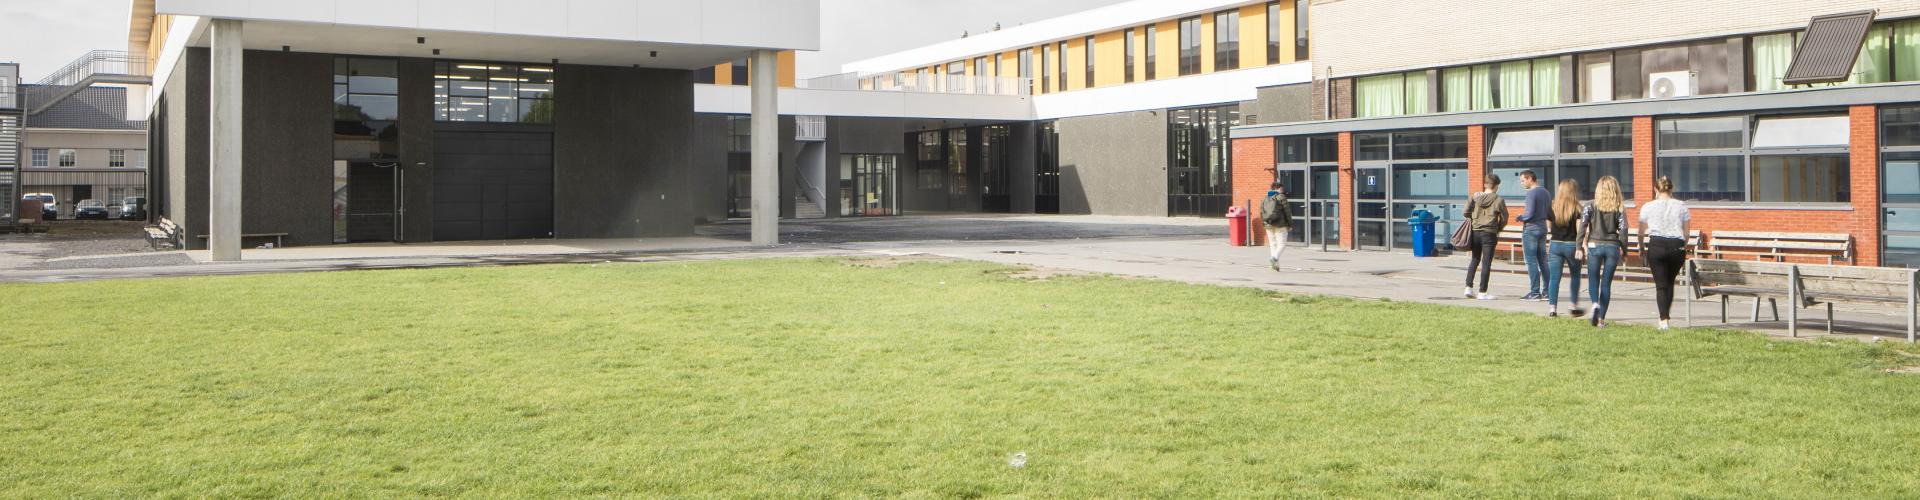  Bernardustechnicum campus Gelukstede Oudenaarde